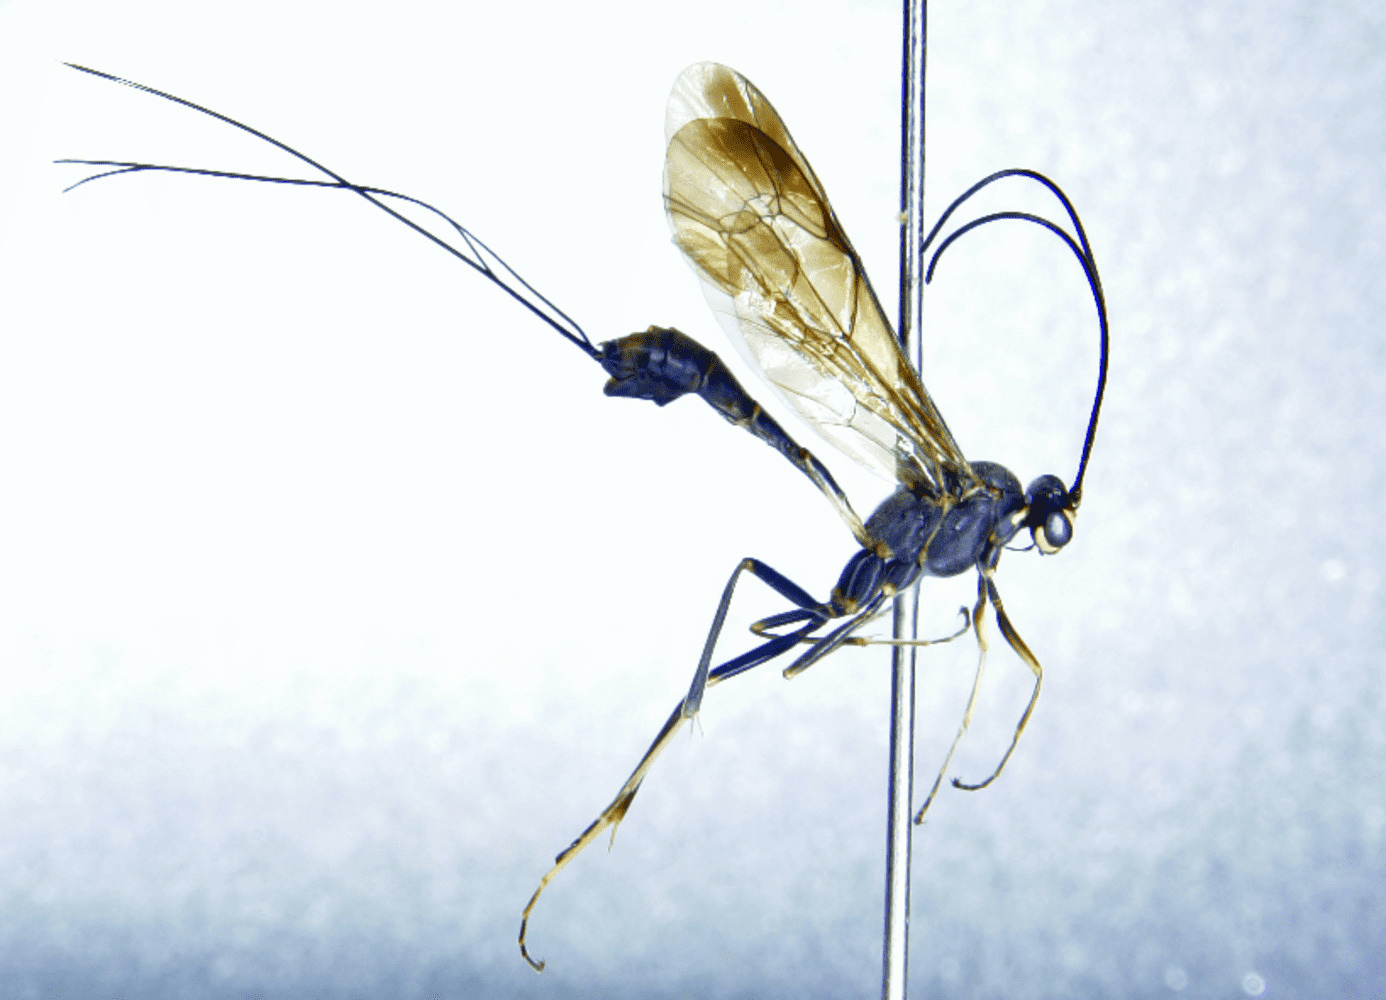 Loxodocus genalis (Ichneumonidae)